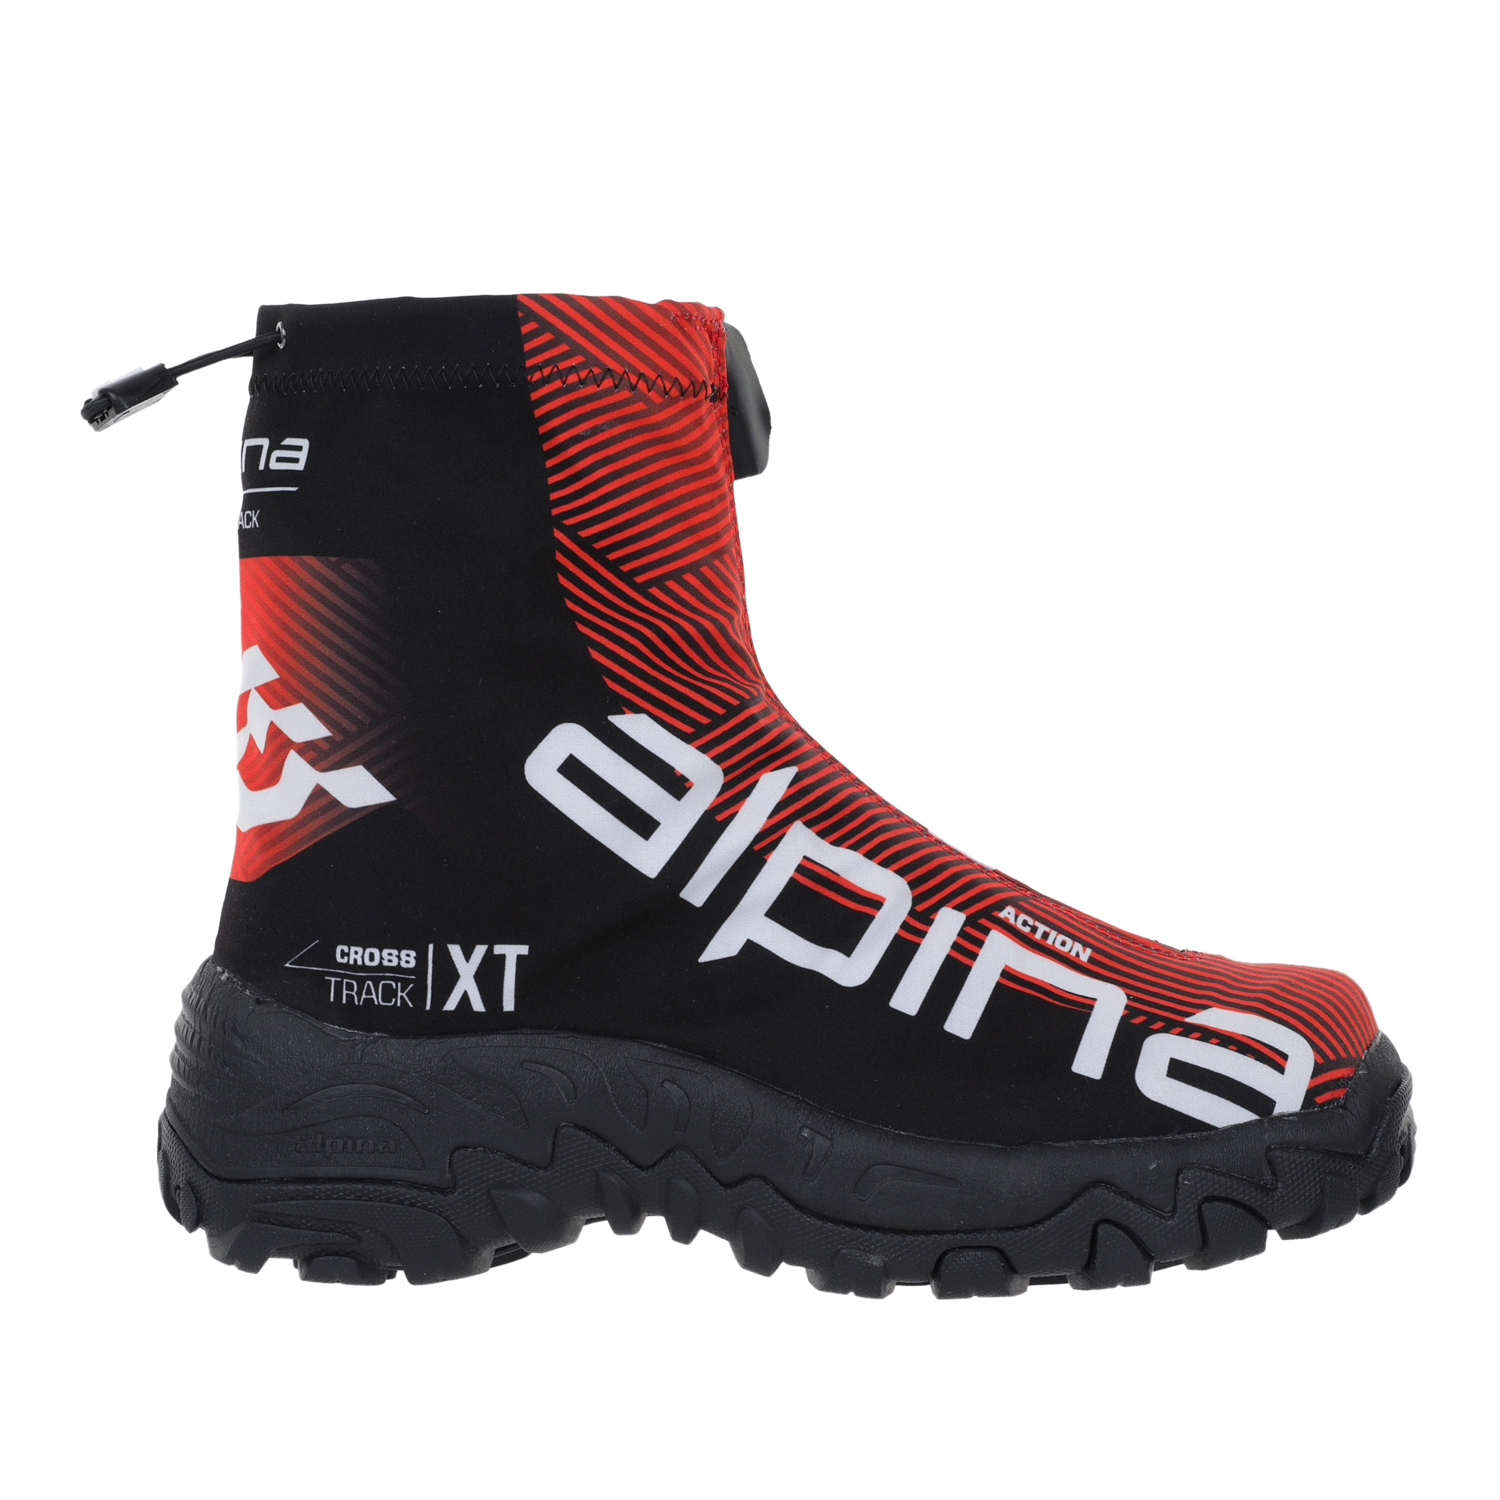 Ботинки Alpina Xt Action, red/black/white, 38 EU